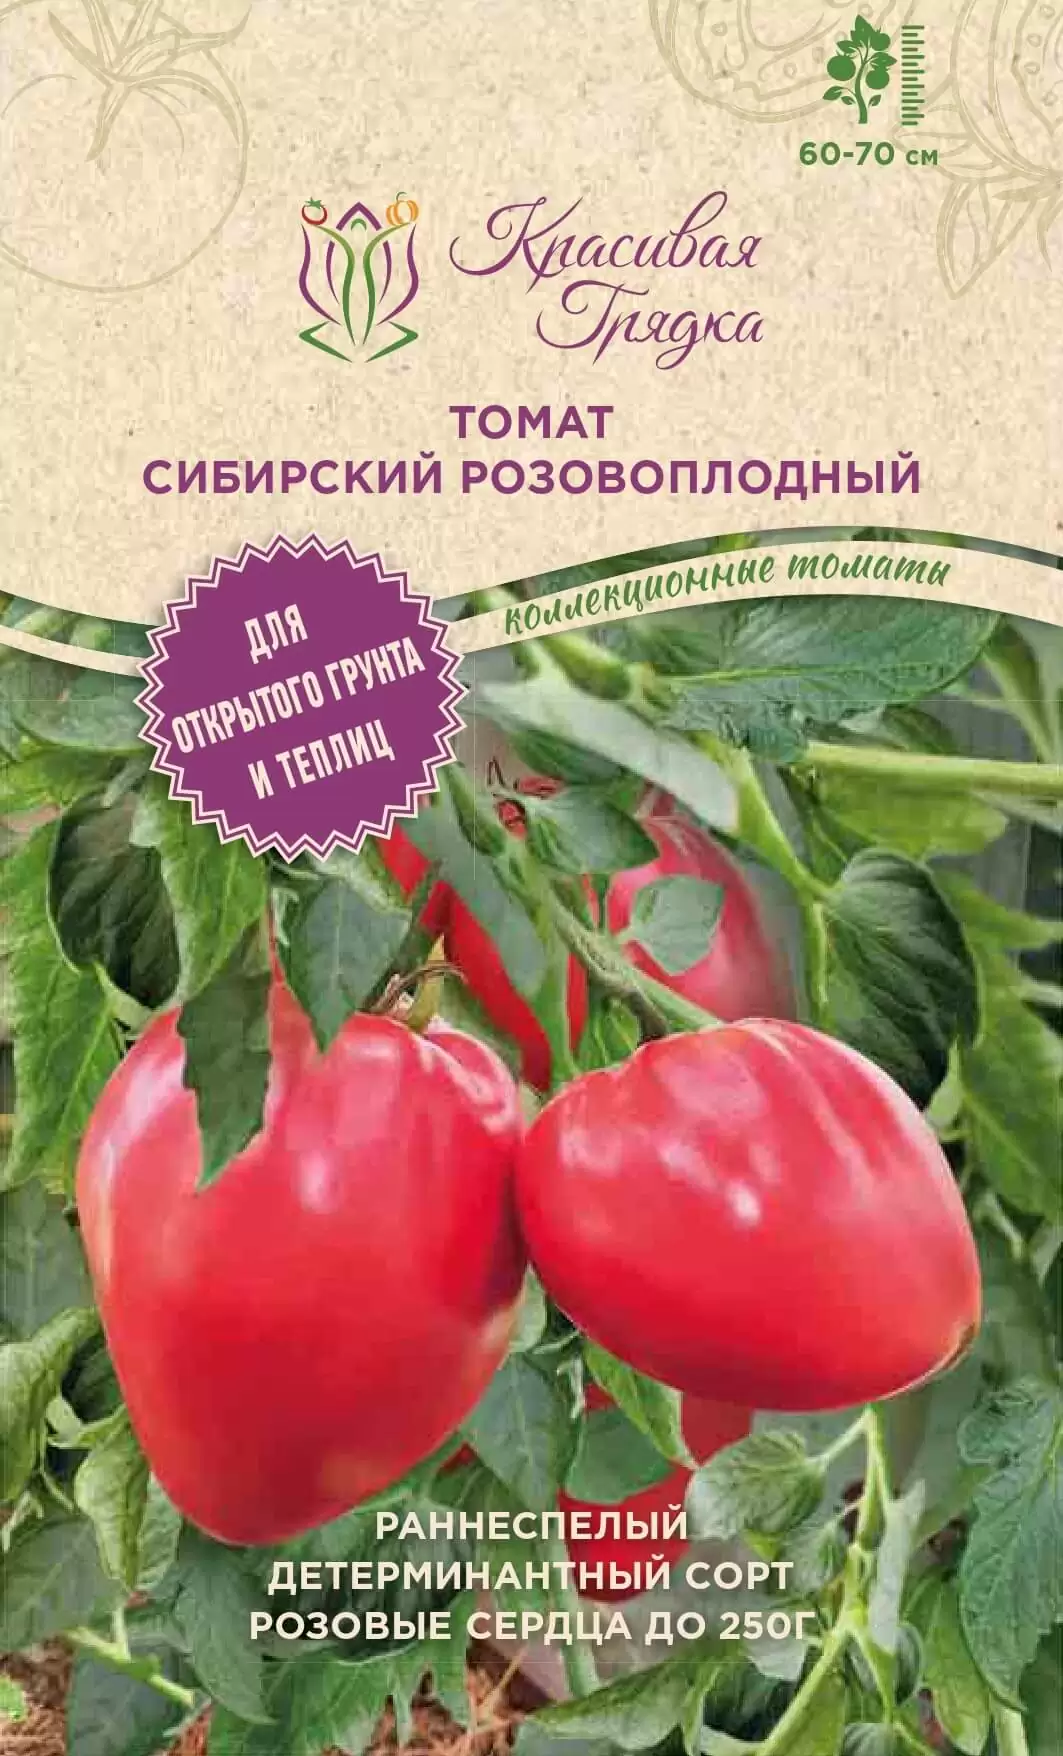 Томат Сибирский розовоплодный